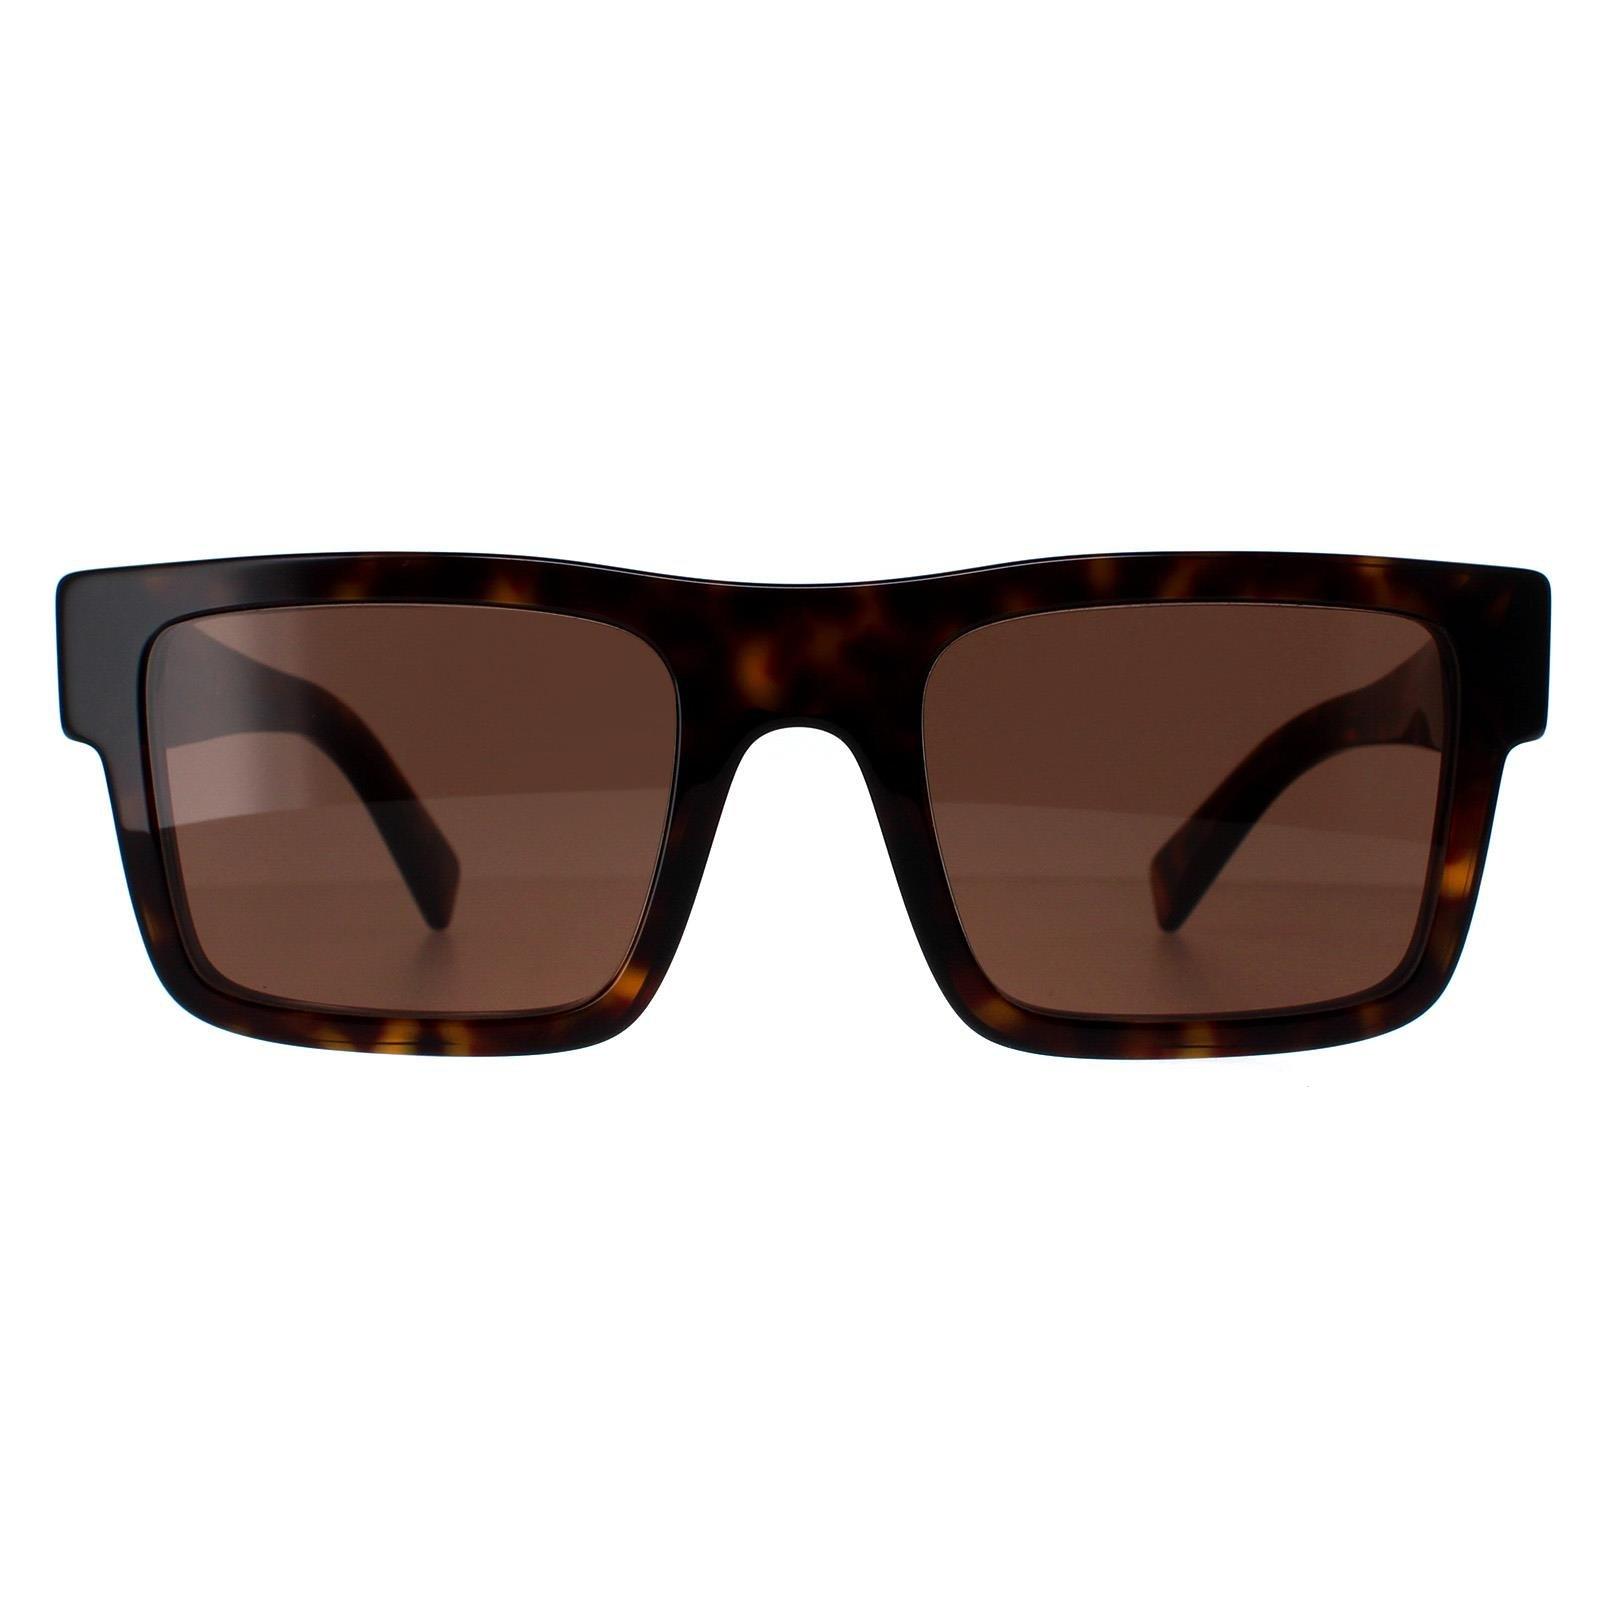 солнцезащитные очки flatlist frankie цвет tortoise Прямоугольник Черепаховый Темно-Коричневый PR19WS Prada, коричневый